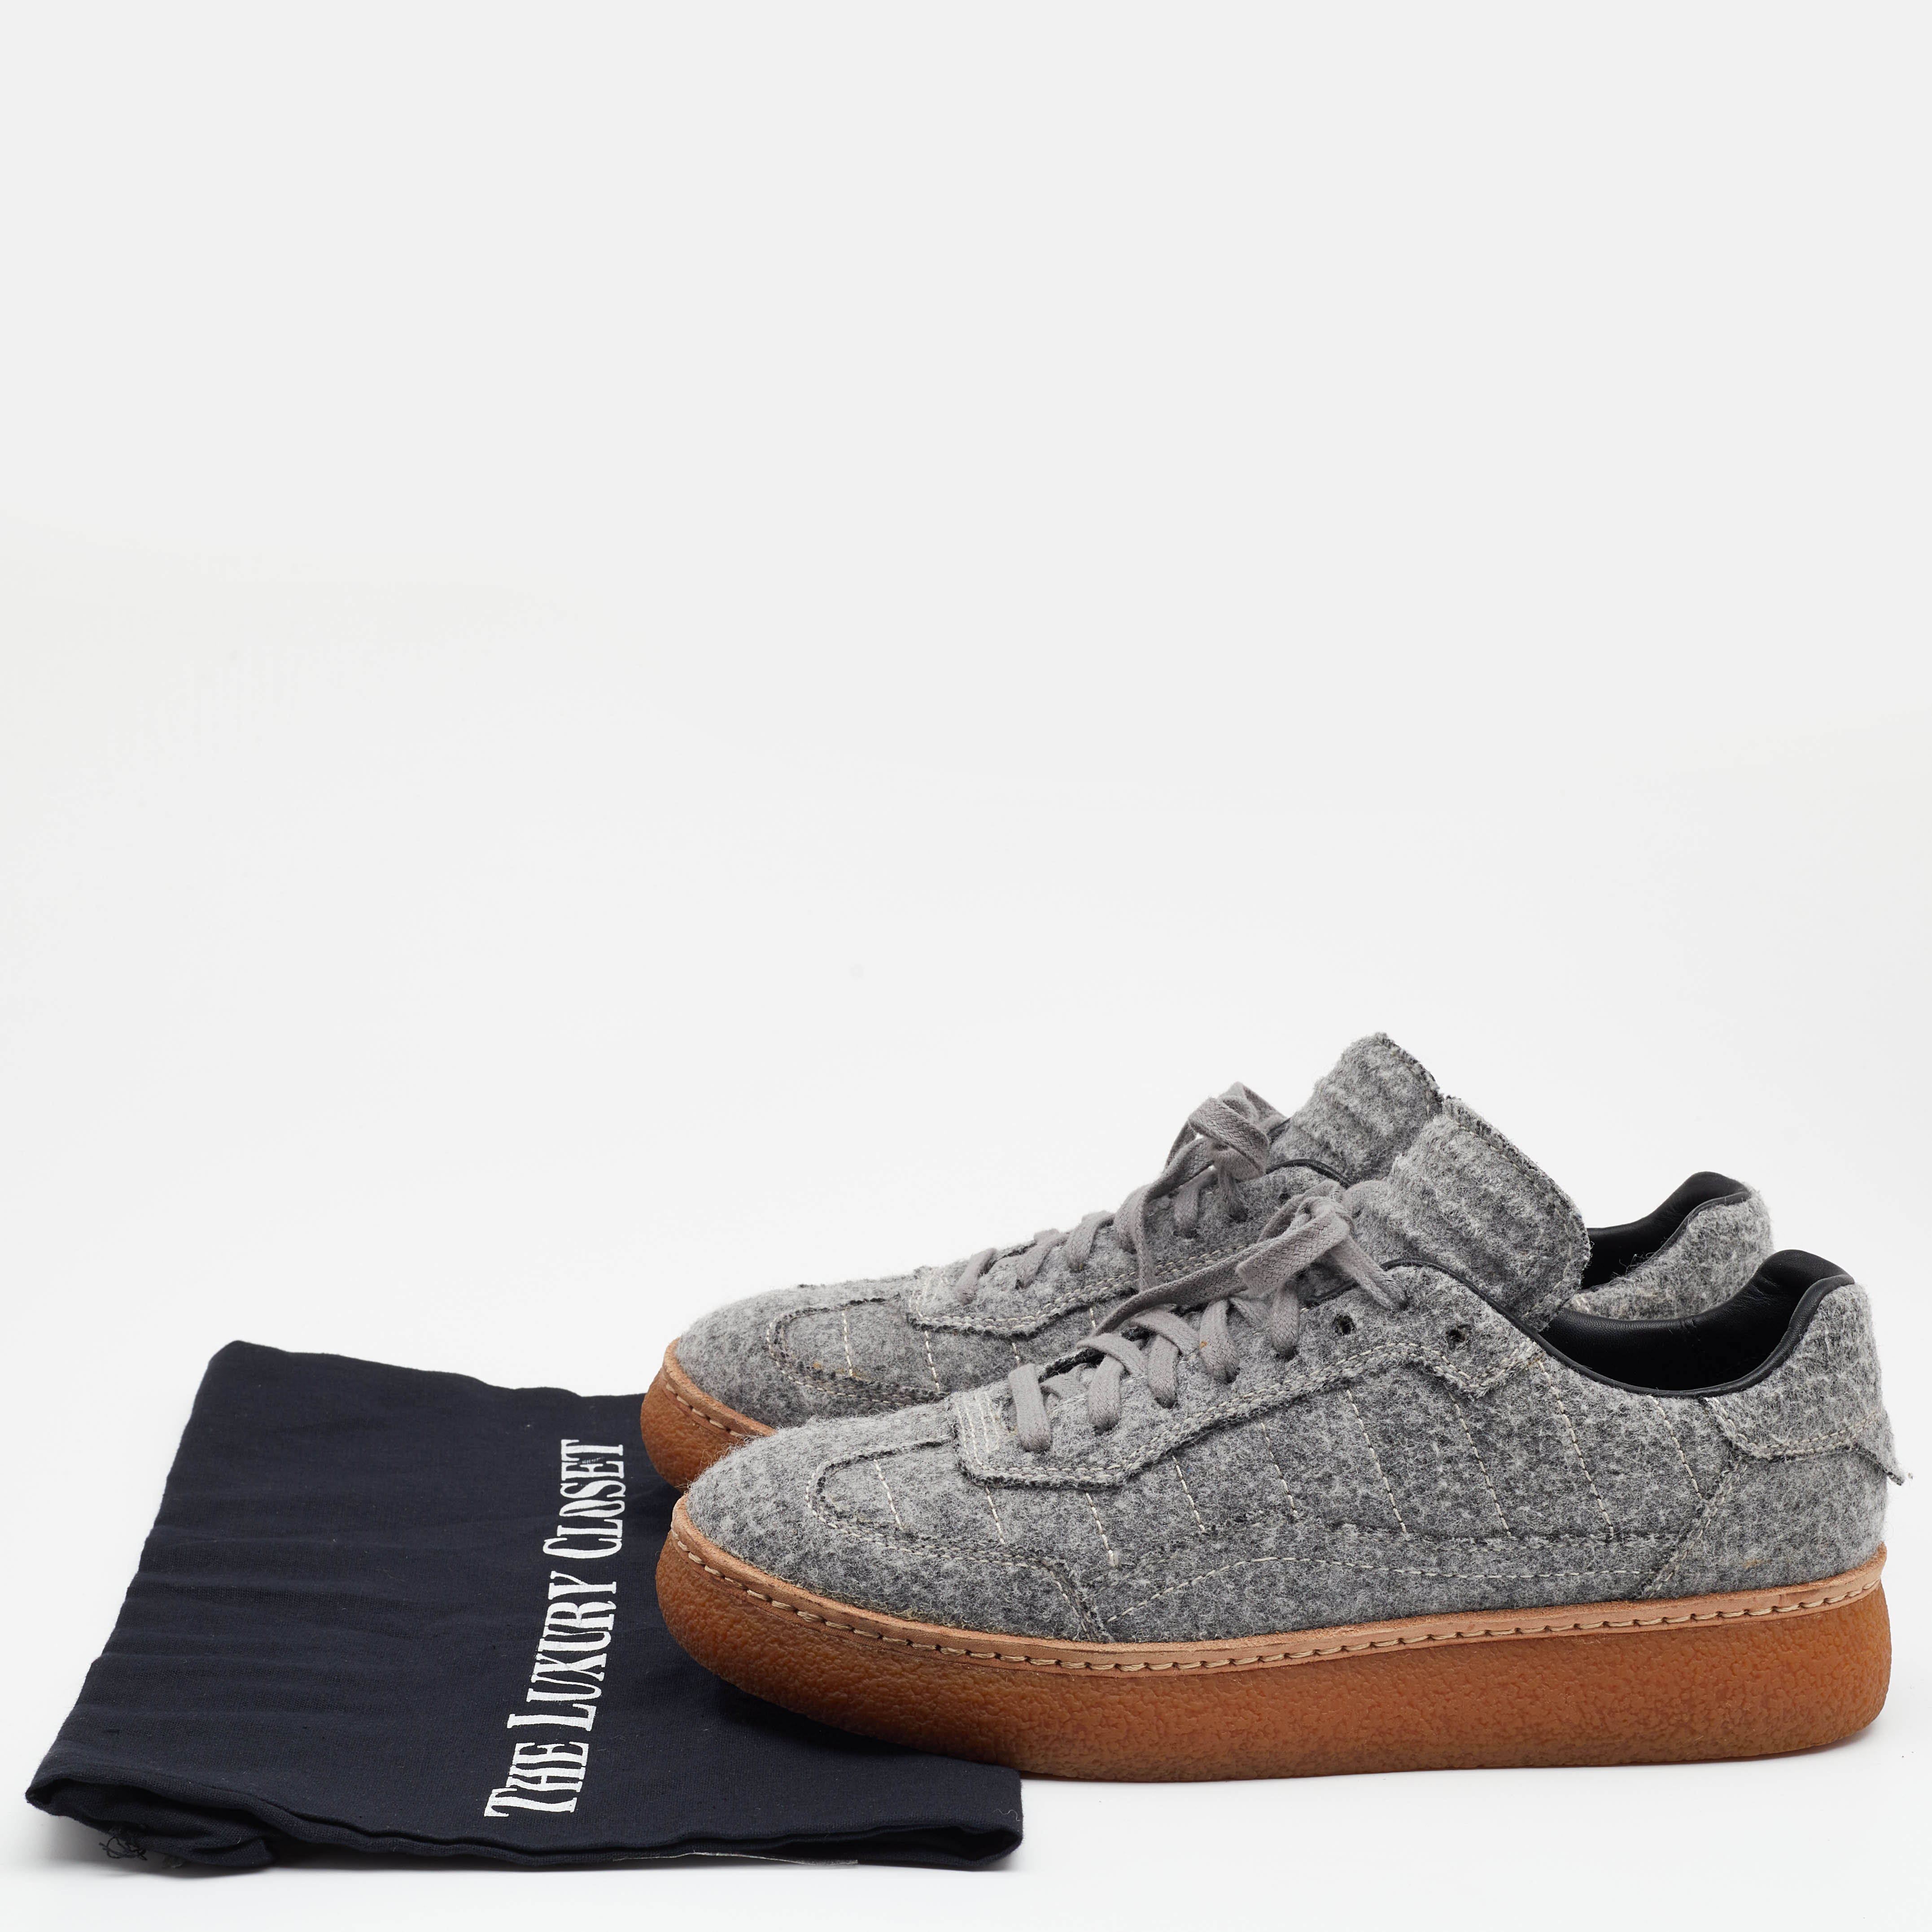 Alexander Wang Grey Wool Eden Low Top Sneakers Size 38